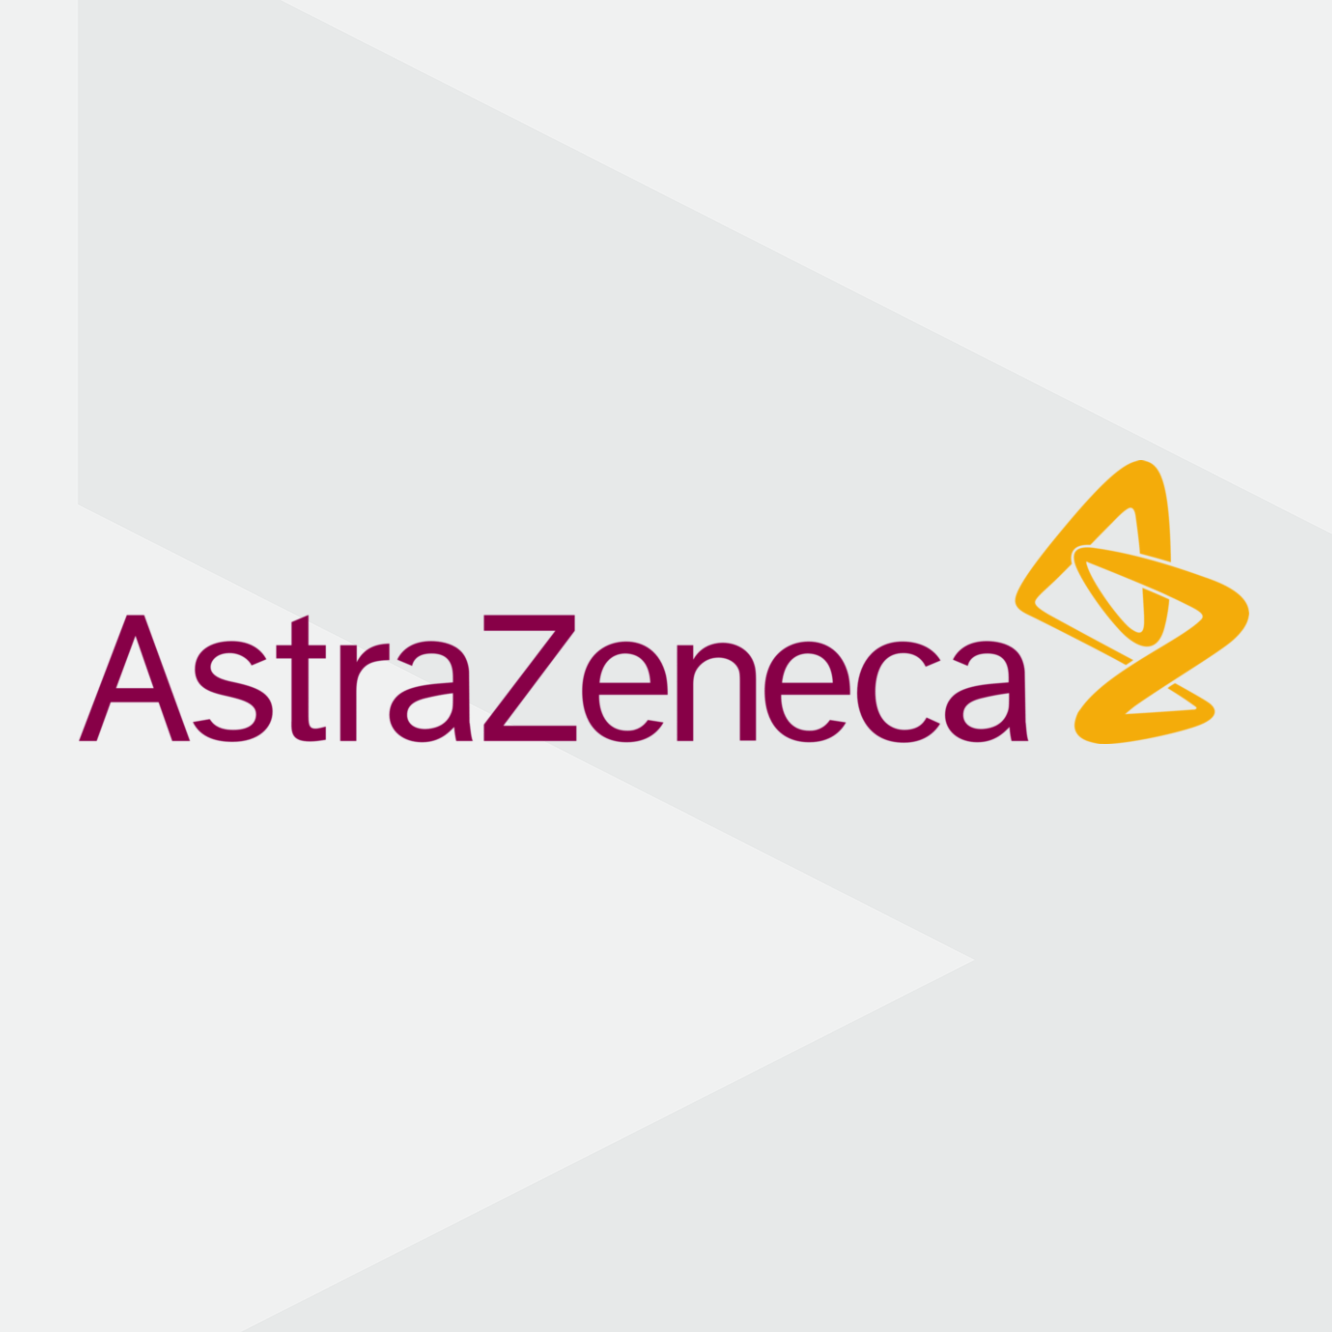 AstraZeneca case study